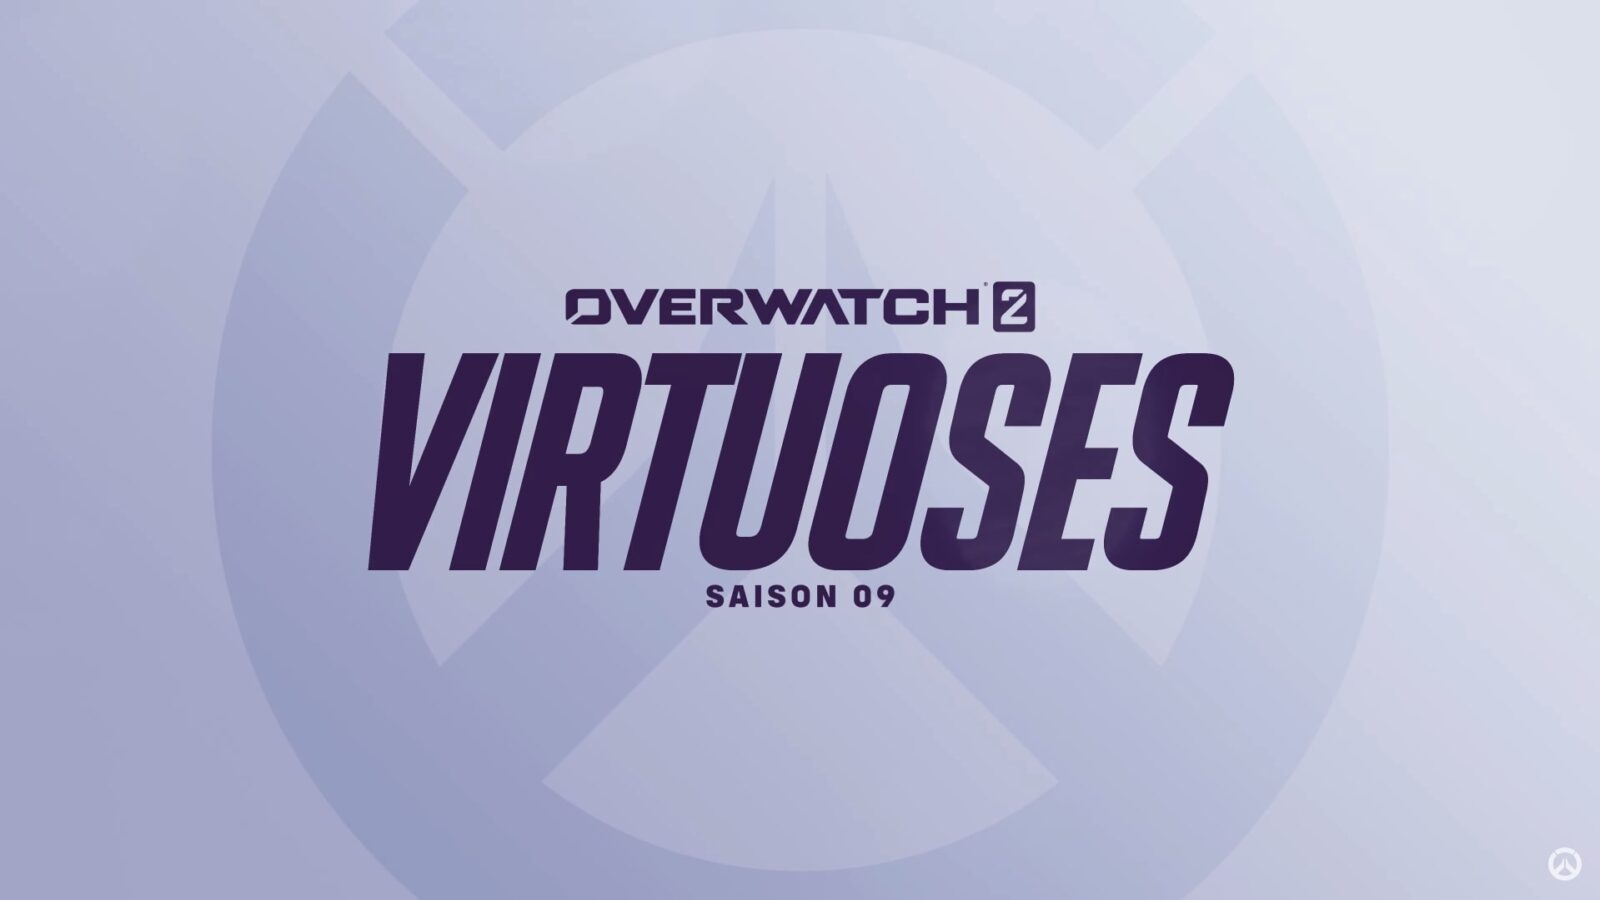 Overwatch 2 - "Virtuoses" : La saison 9 se dévoile dans un nouveau trailer